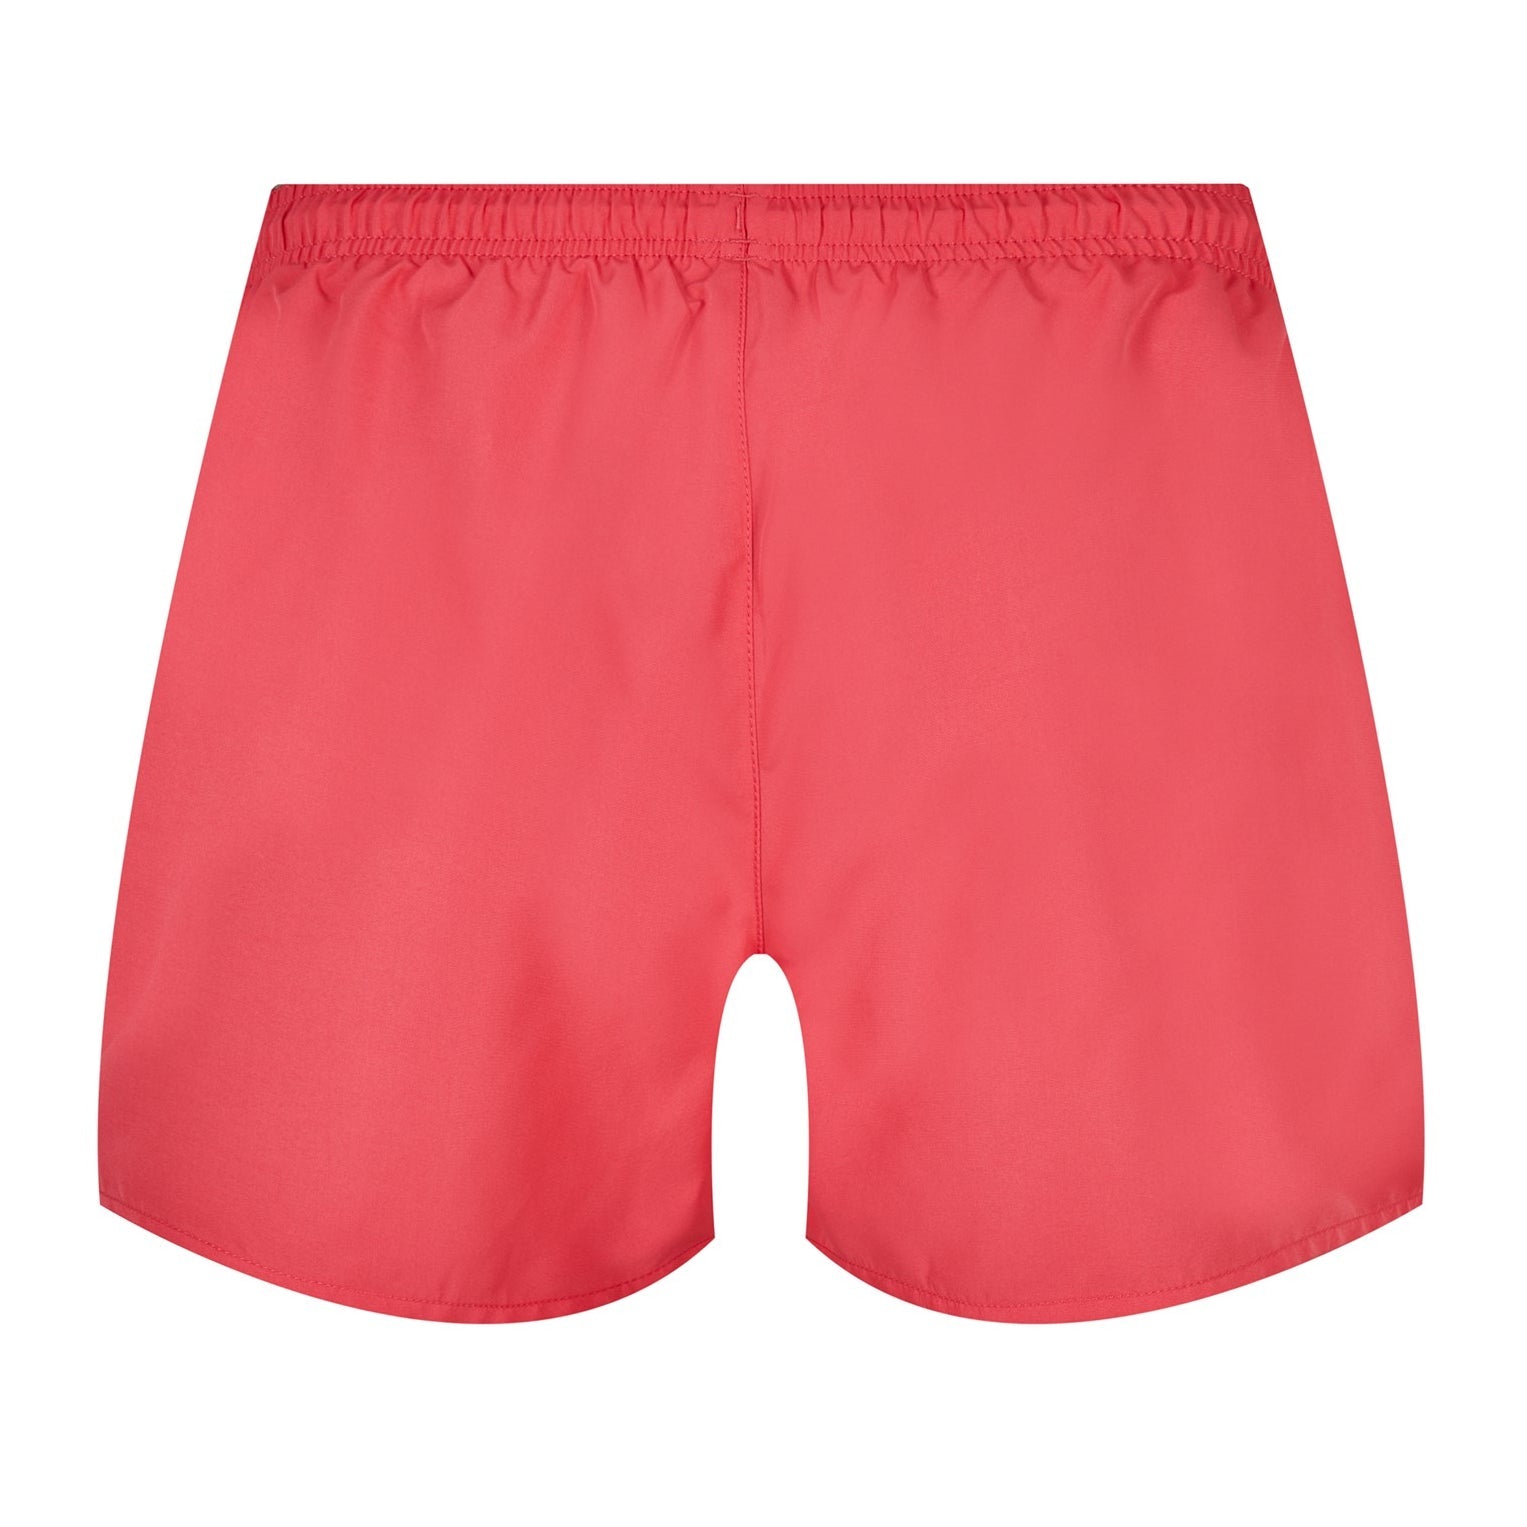 Emporio Armani Boxer Swim Shorts - Red - Escape Menswear